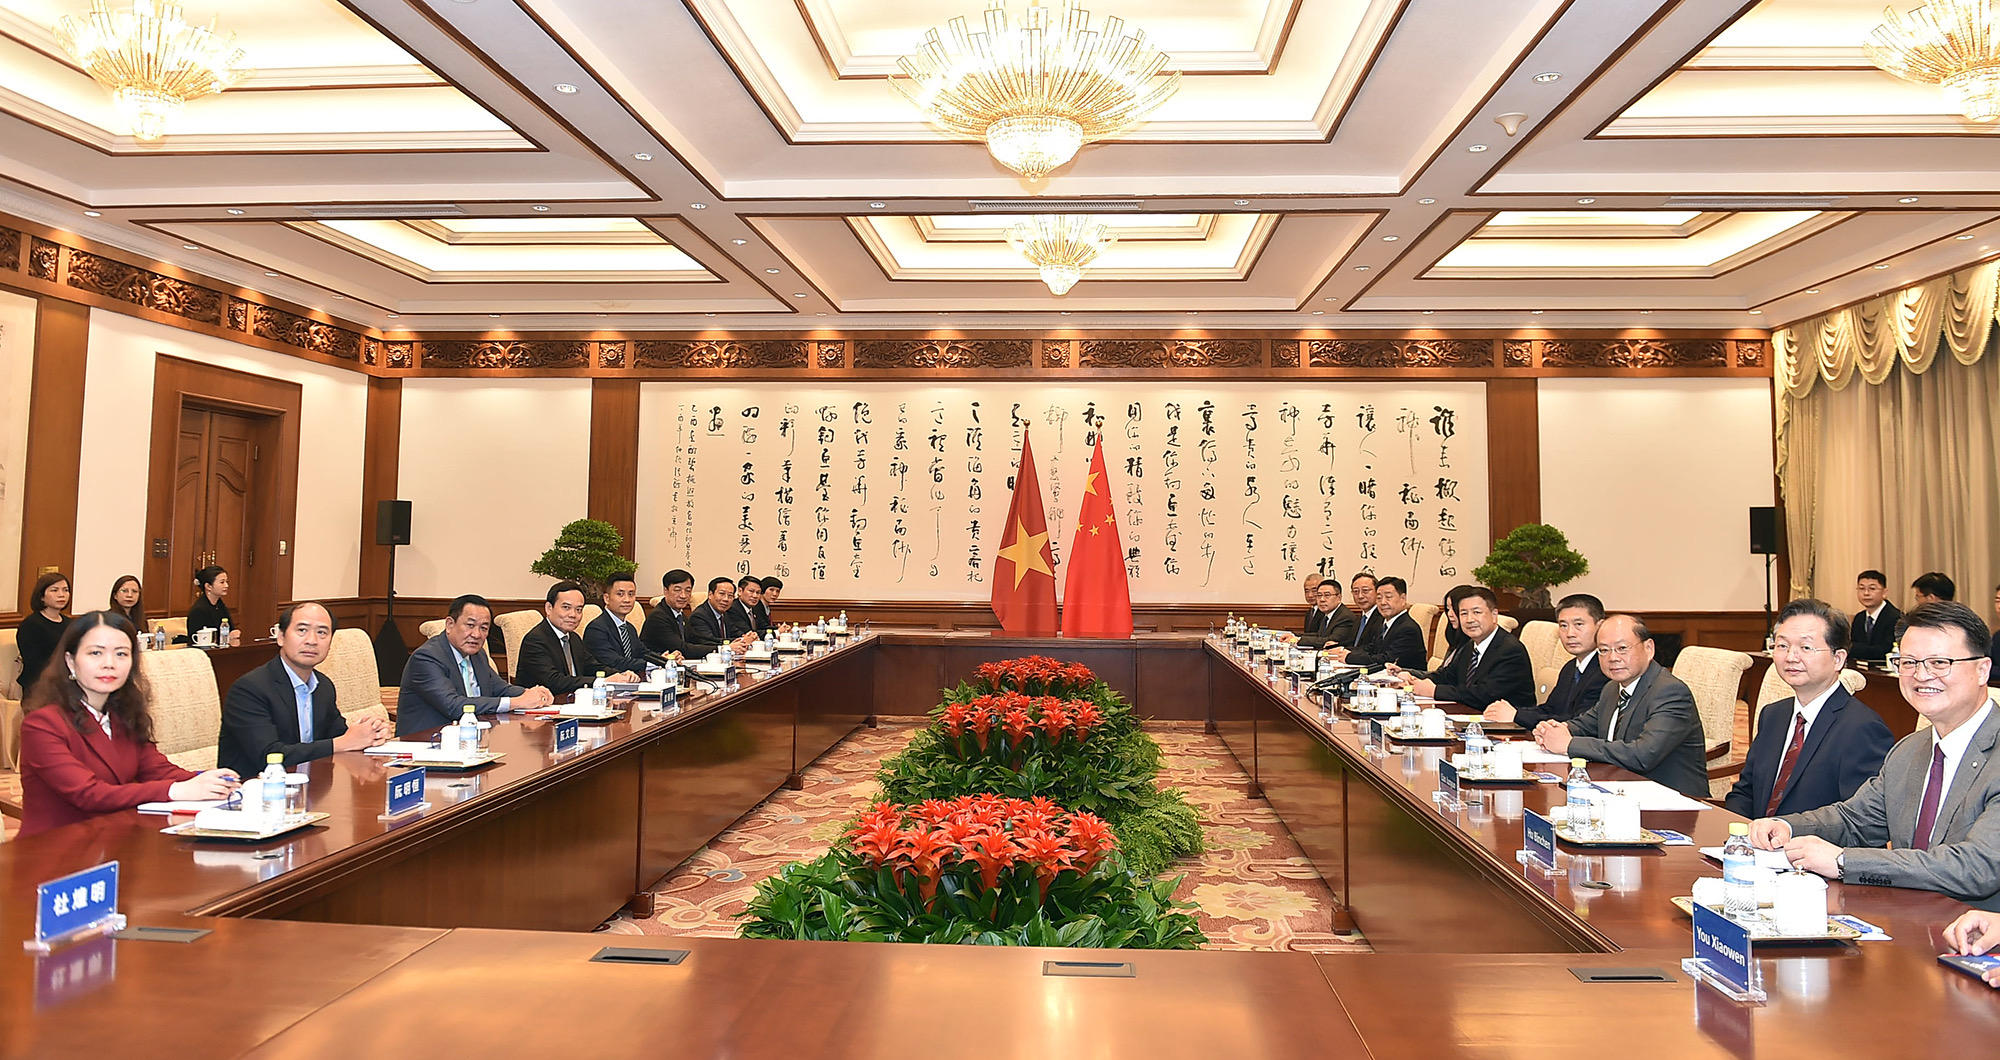 Phó Thủ tướng Trần Lưu Quang bày tỏ vui mừng nhận thấy hợp tác về phòng, chống ma túy giữa Việt Nam và Trung Quốc không ngừng được đẩy mạnh, đa dạng về nội dung, hình thức hợp tác và đã đạt được nhiều kết quả quan trọng. Ảnh: VGP